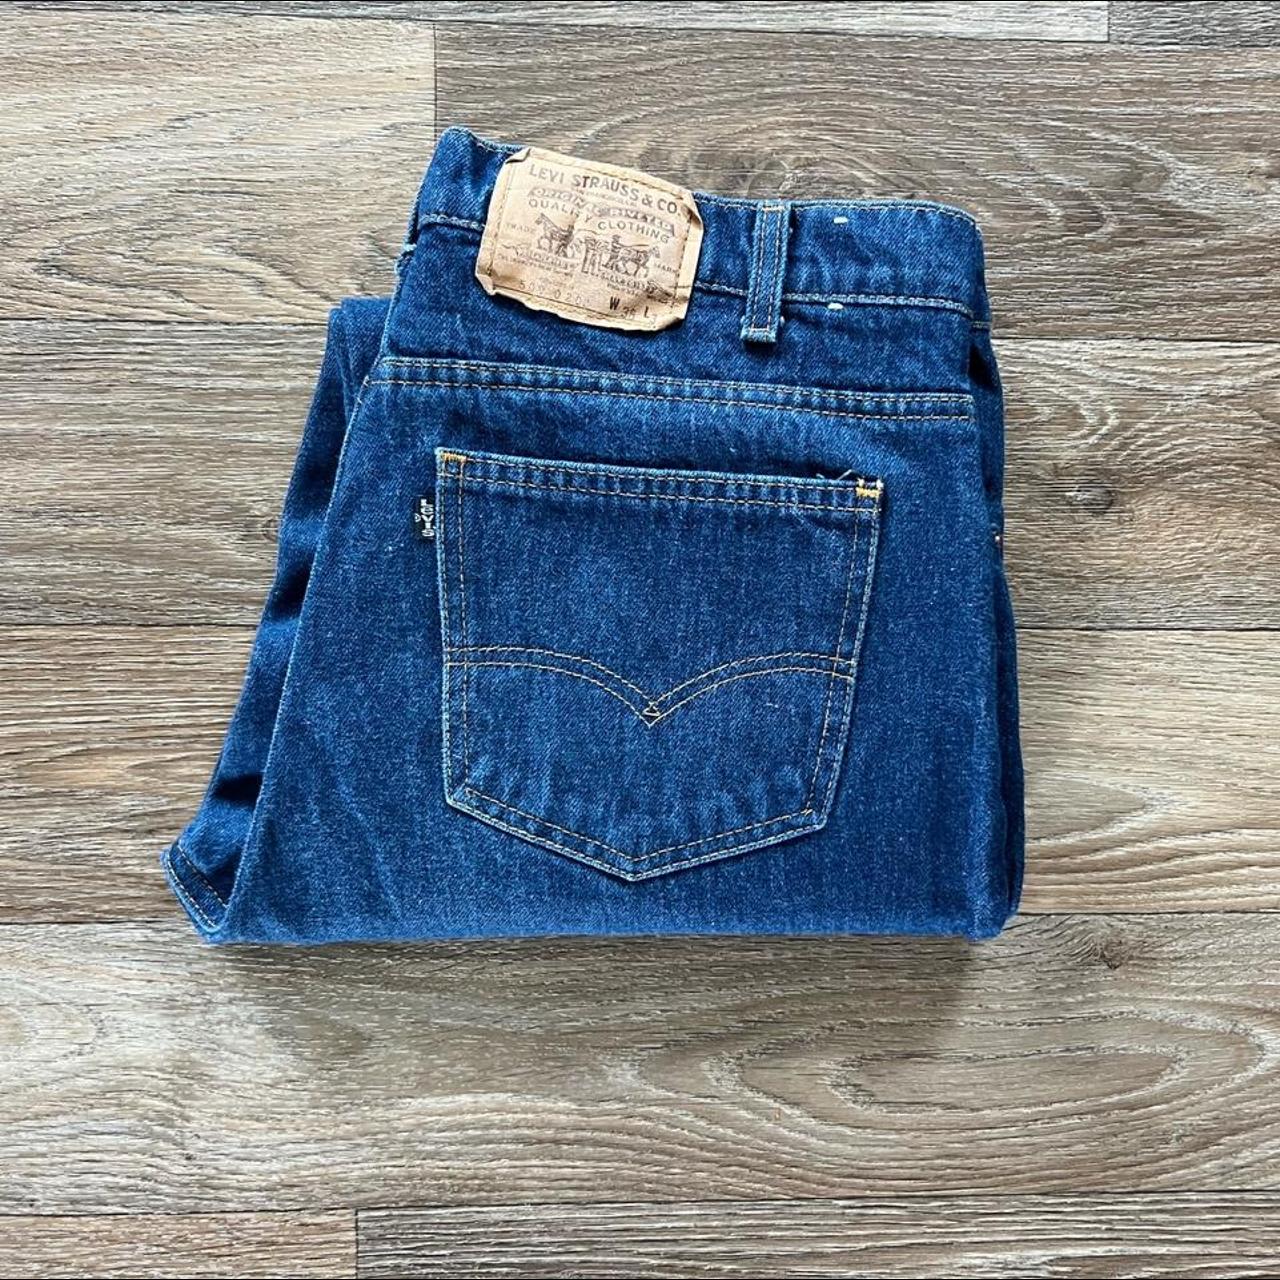 Vintage Levi’s 509 high waisted dark denim jeans!... - Depop